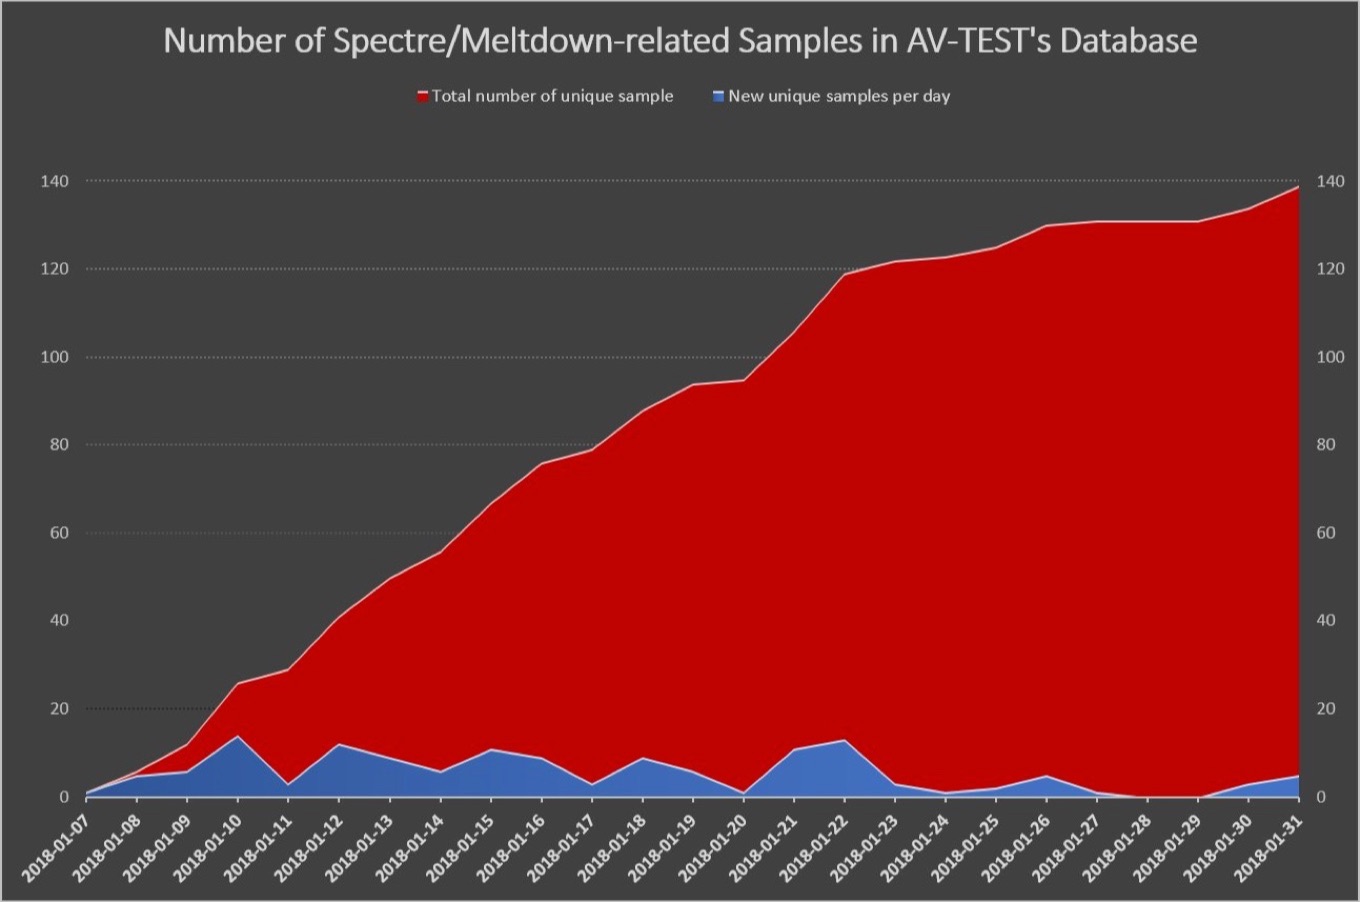 AV-TESTが検出したSpectreとMeltdown脆弱性を利用したマルウェアの数